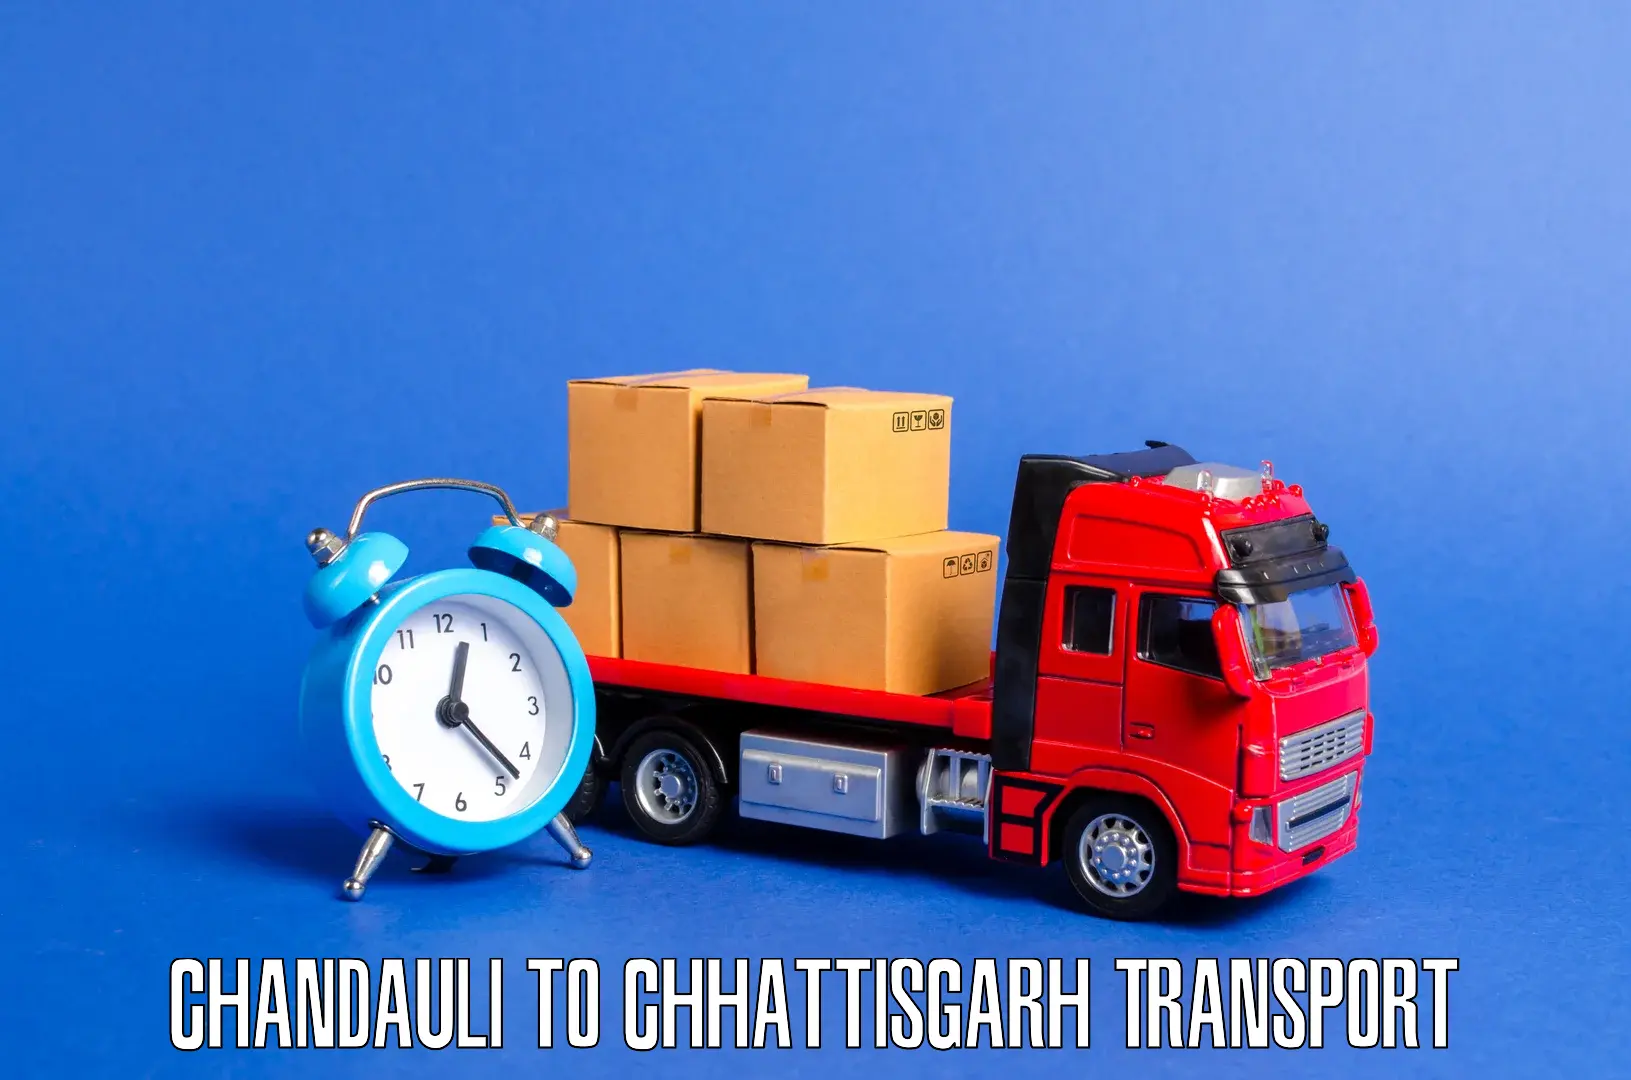 Goods delivery service Chandauli to Wadrafnagar